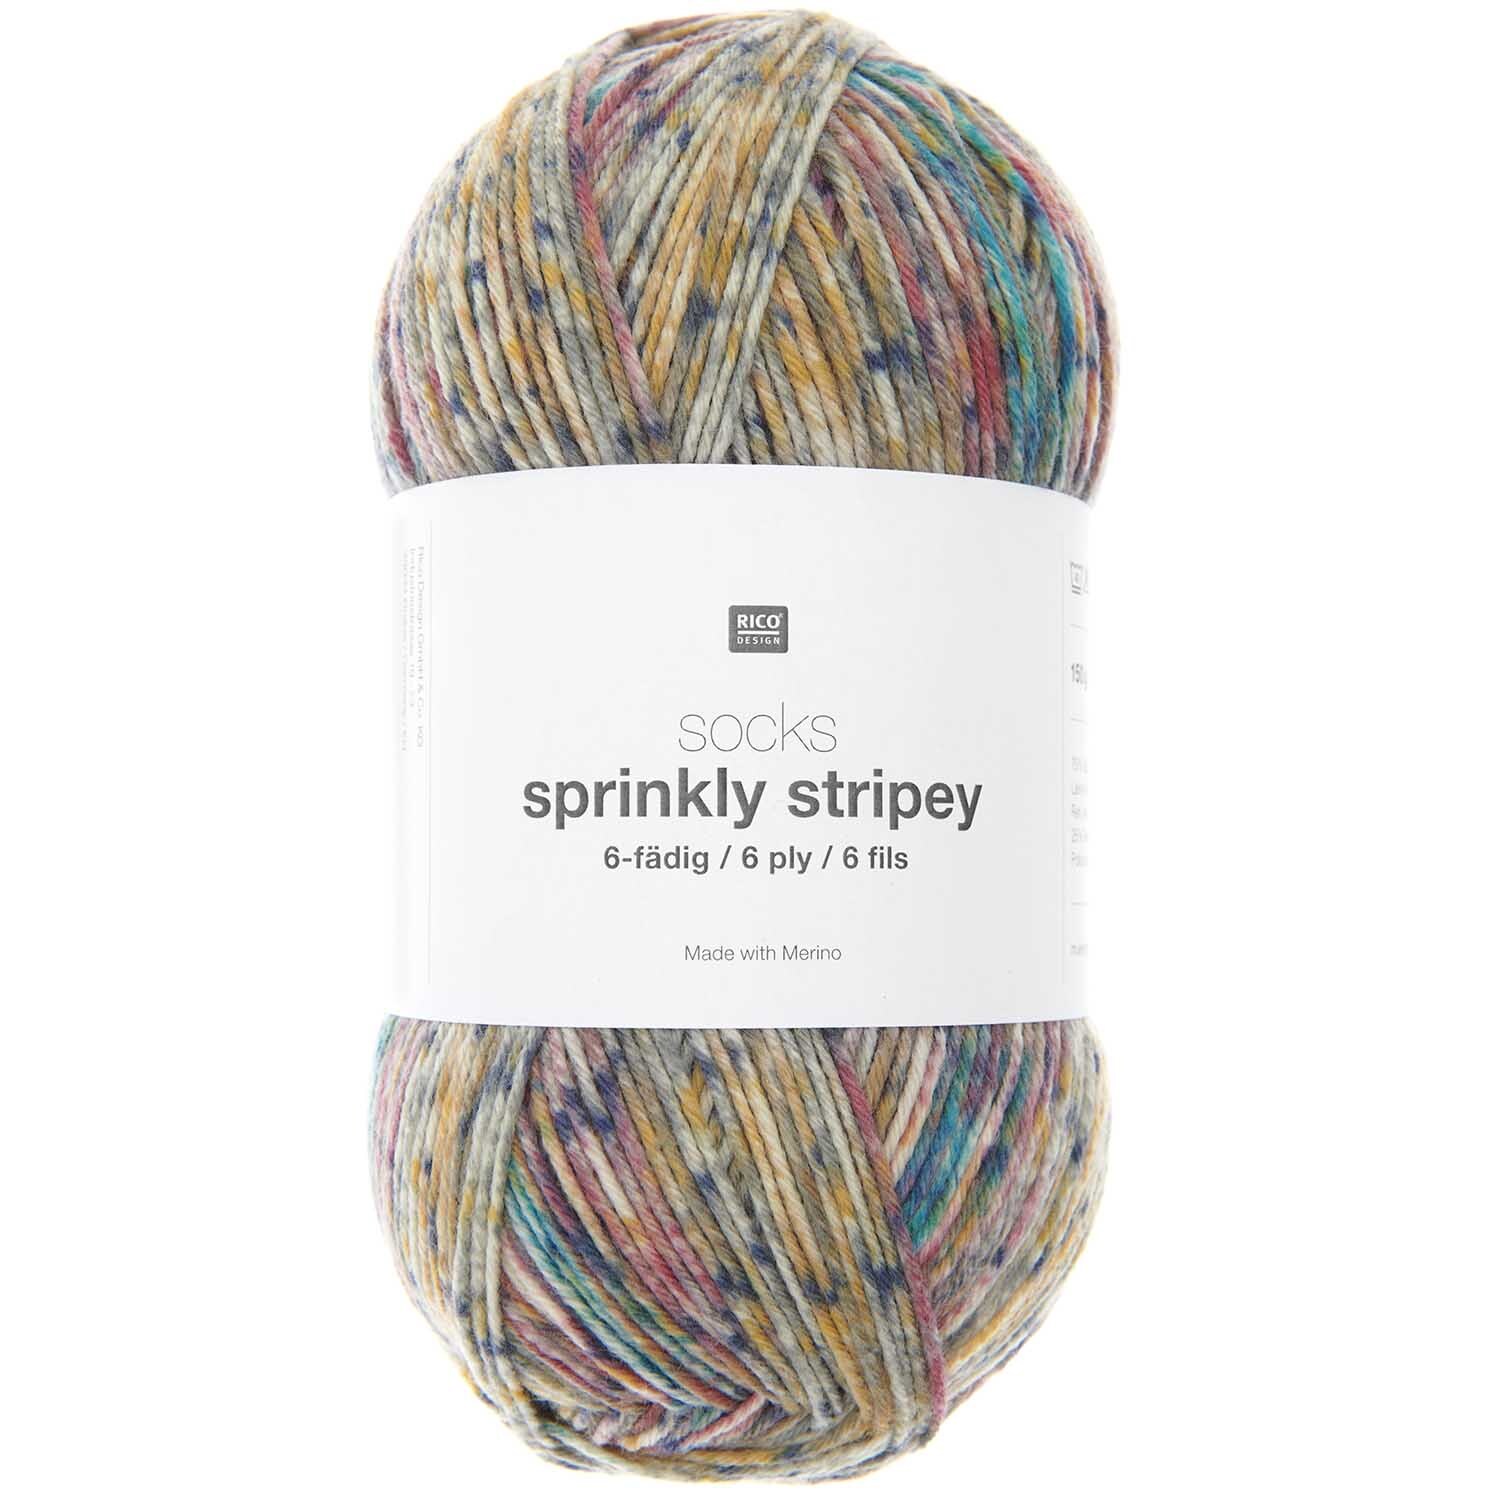 Socks Sprinkly Striply 6-fädig